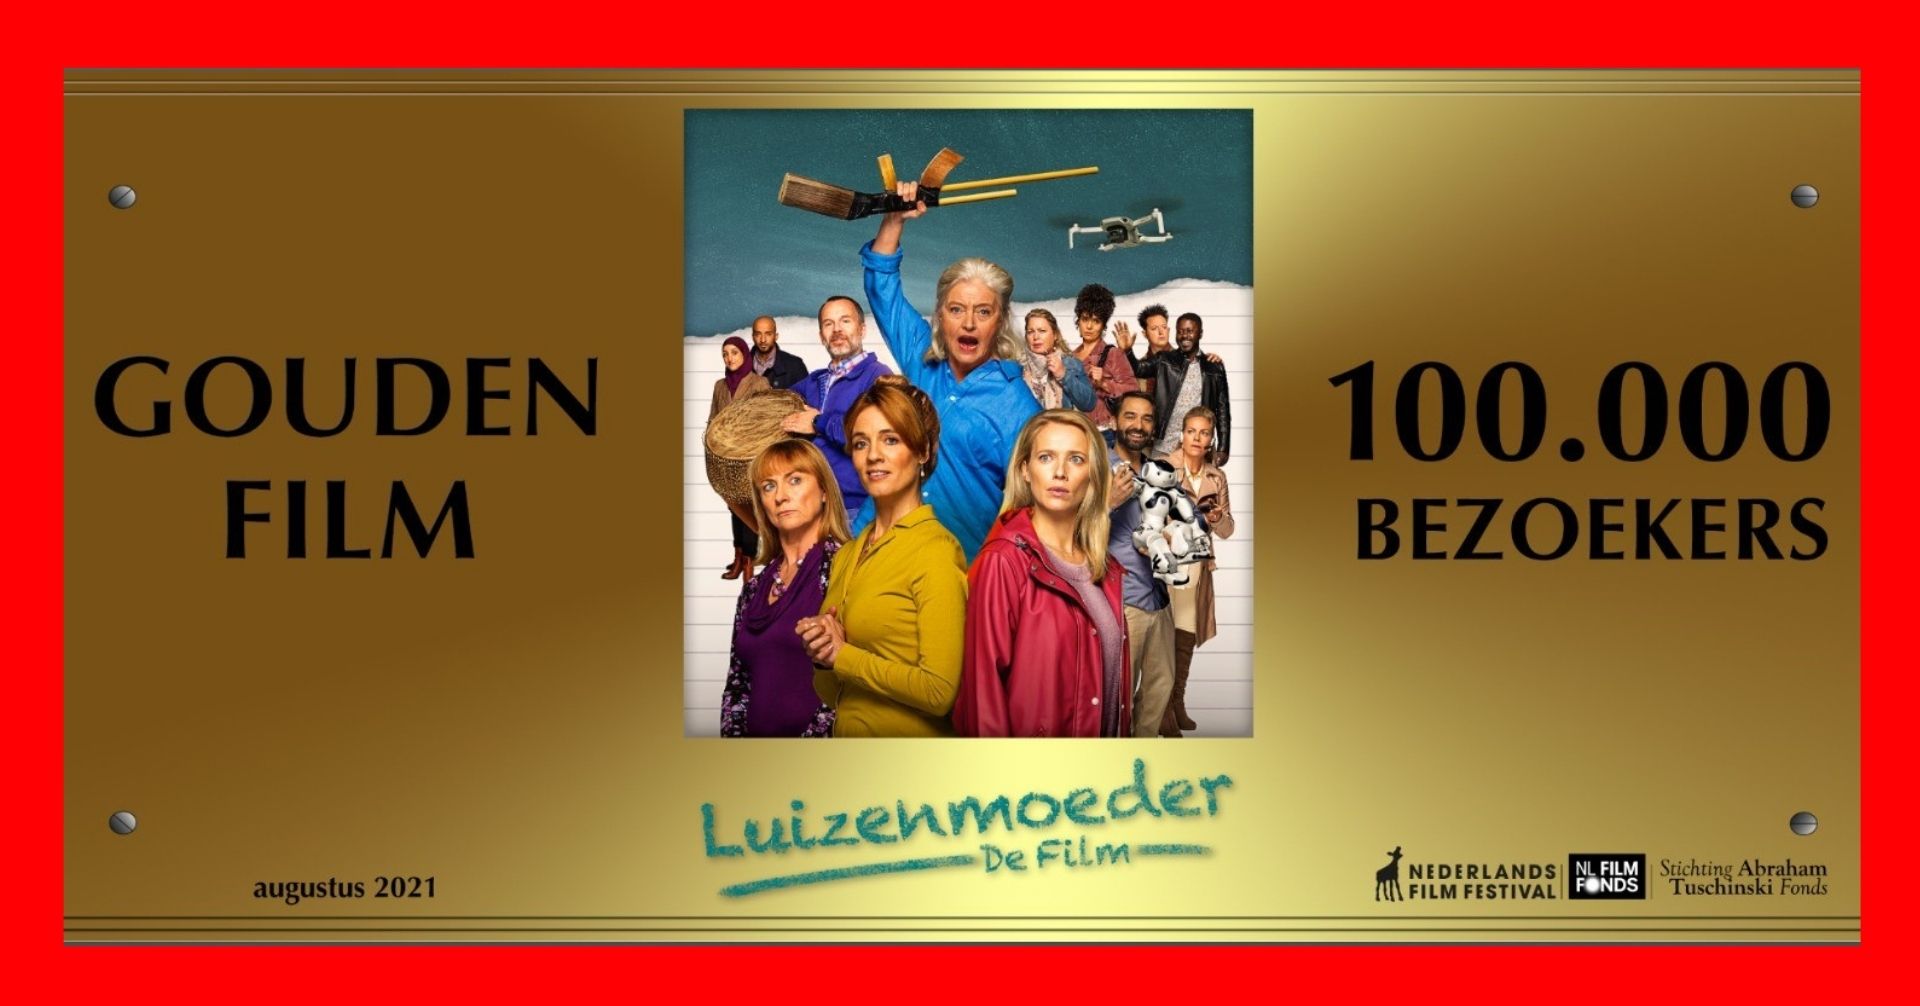 Luizenmoeder – de film bekroond met Gouden Film   